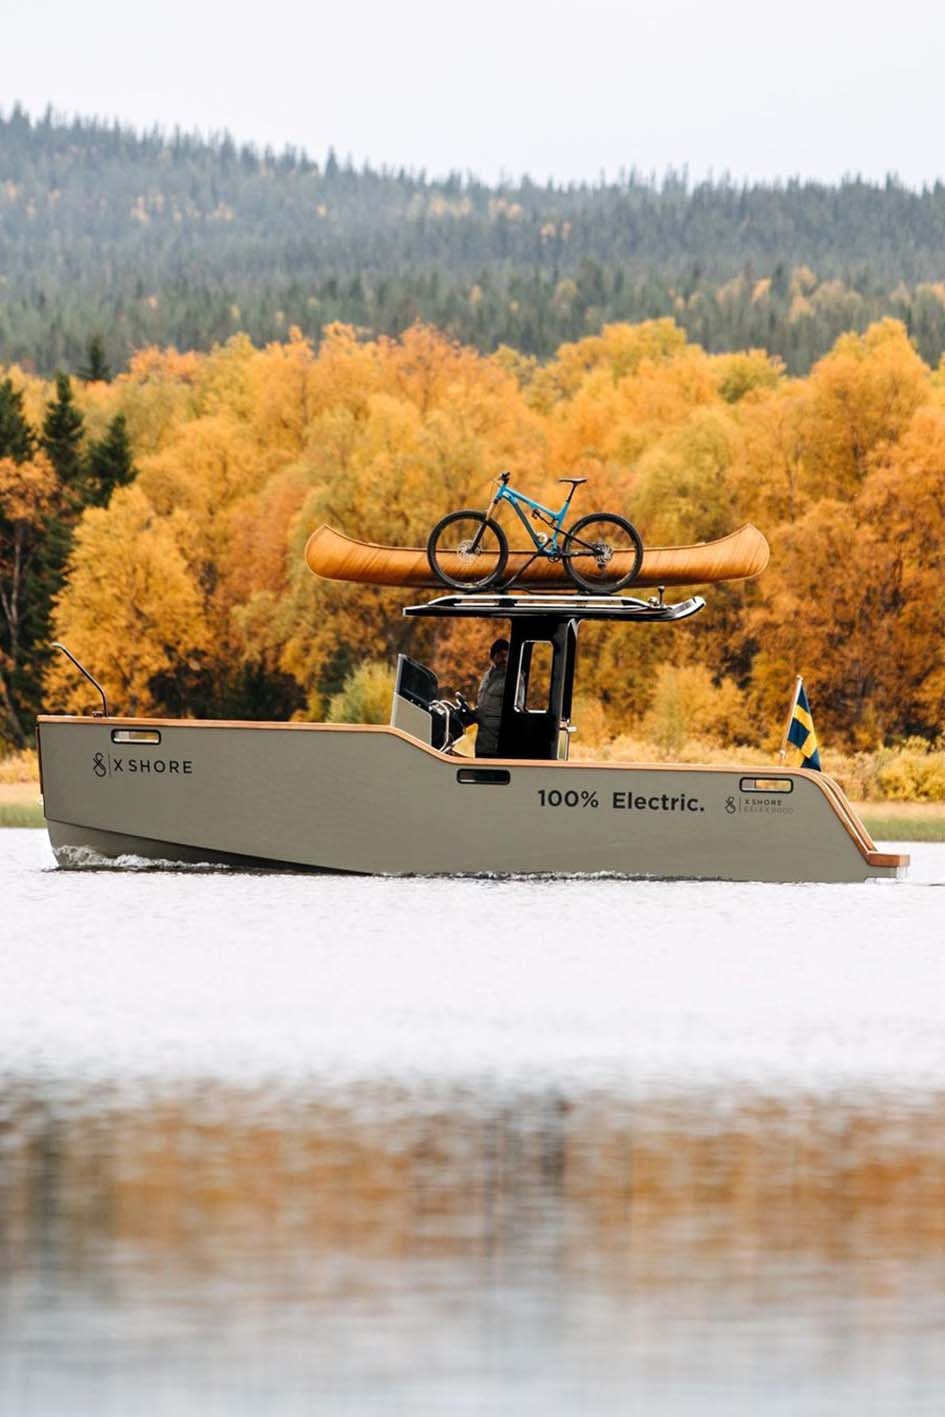 海洋版 Tesla －電動船 X-Shore「Eelex 8000」極致北歐簡約風範